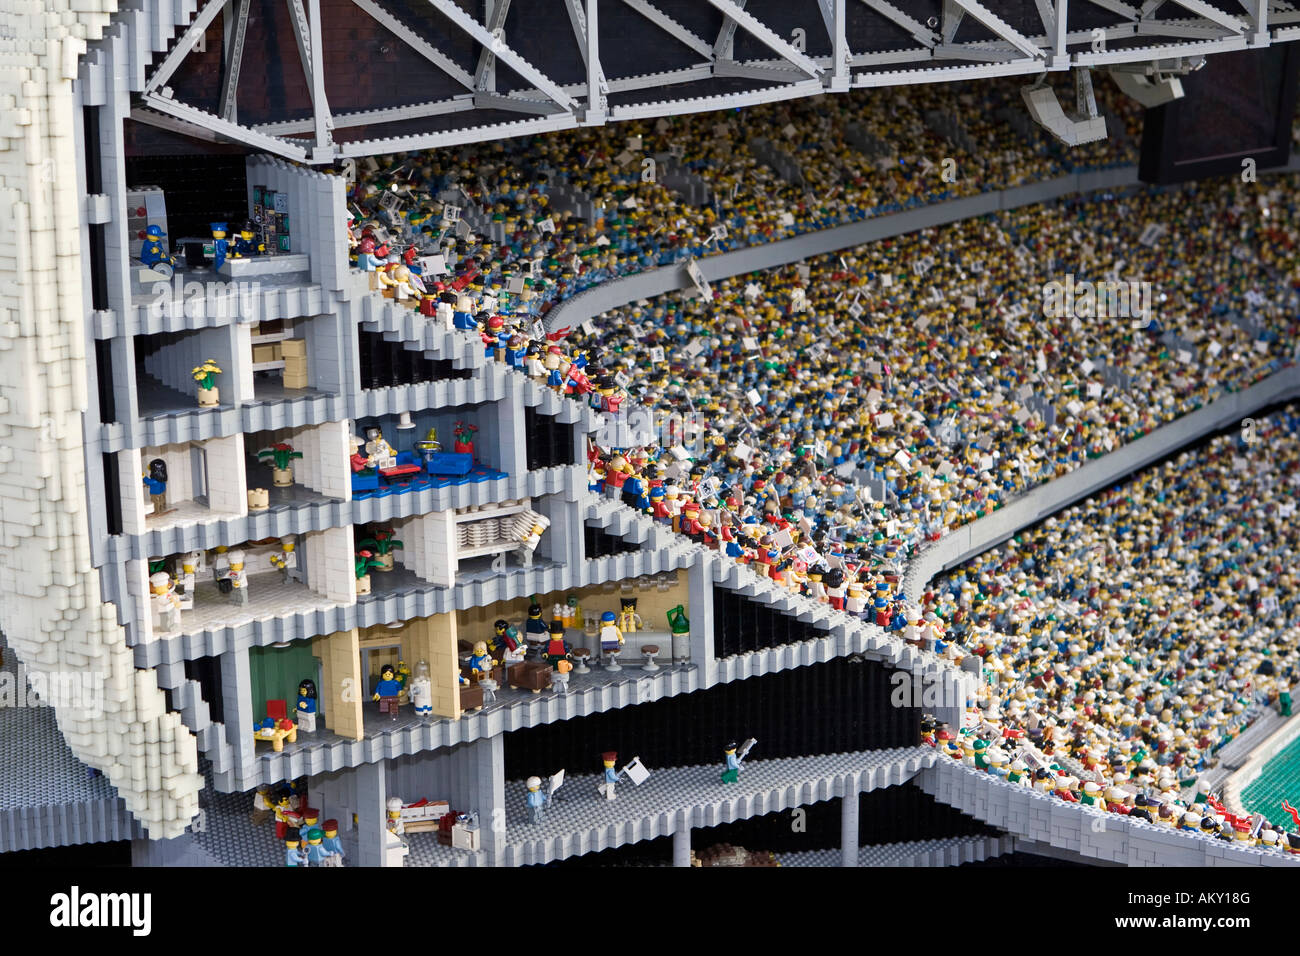 148 photos et images de Lego Stadium - Getty Images